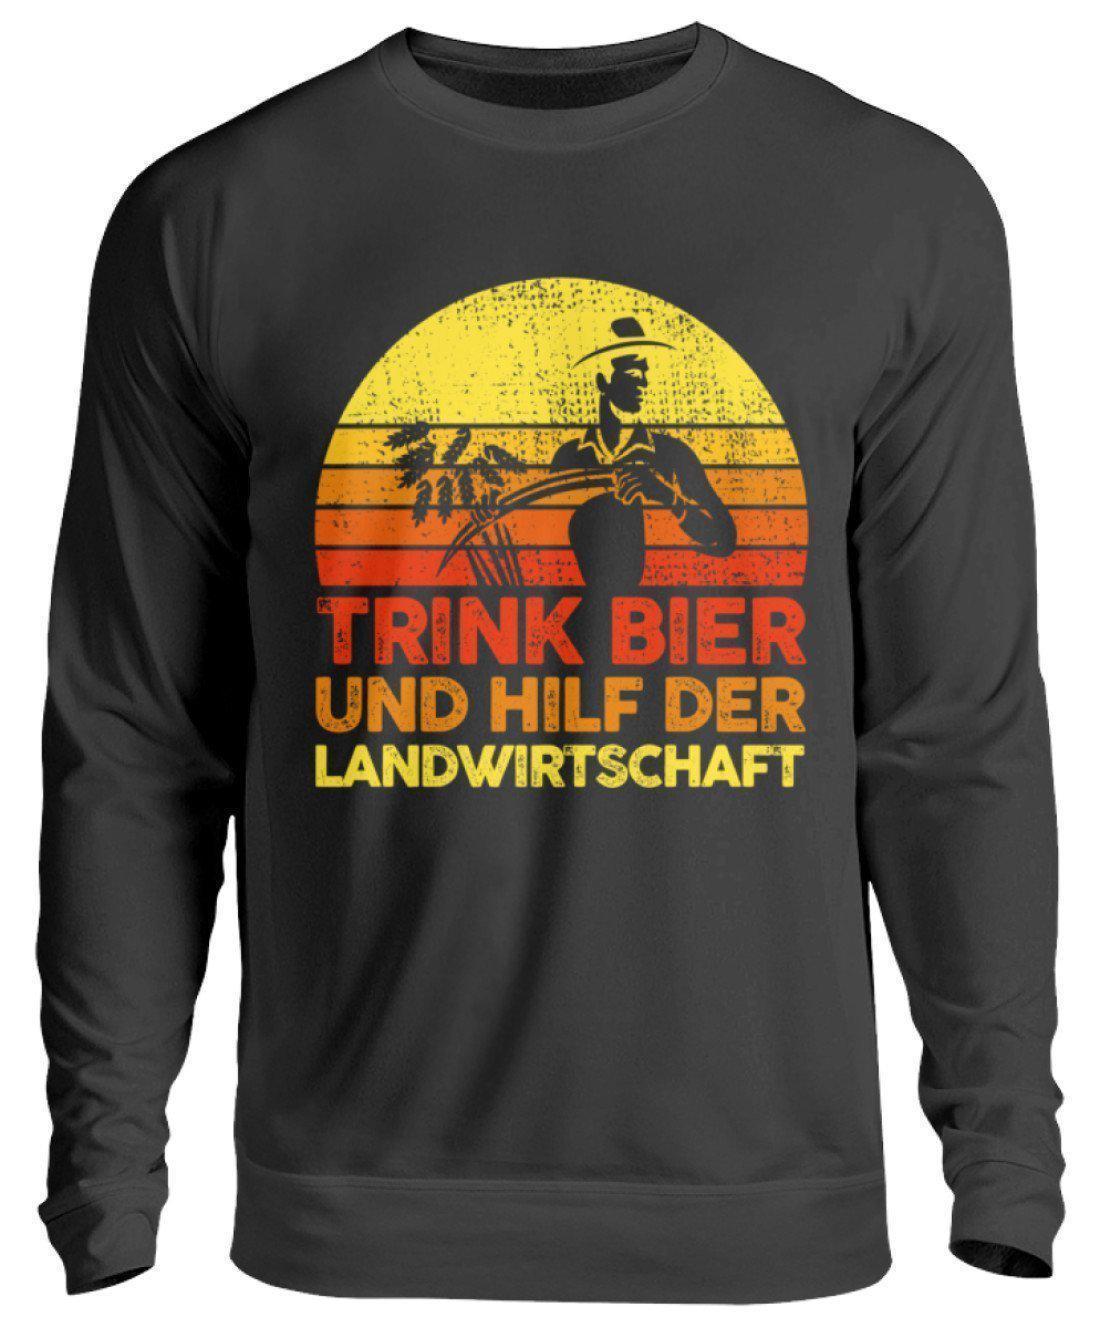 Trink Bier hilf Landwirtschaft Retro · Unisex Sweatshirt Pullover-Unisex Sweatshirt-Jet Black-S-Agrarstarz